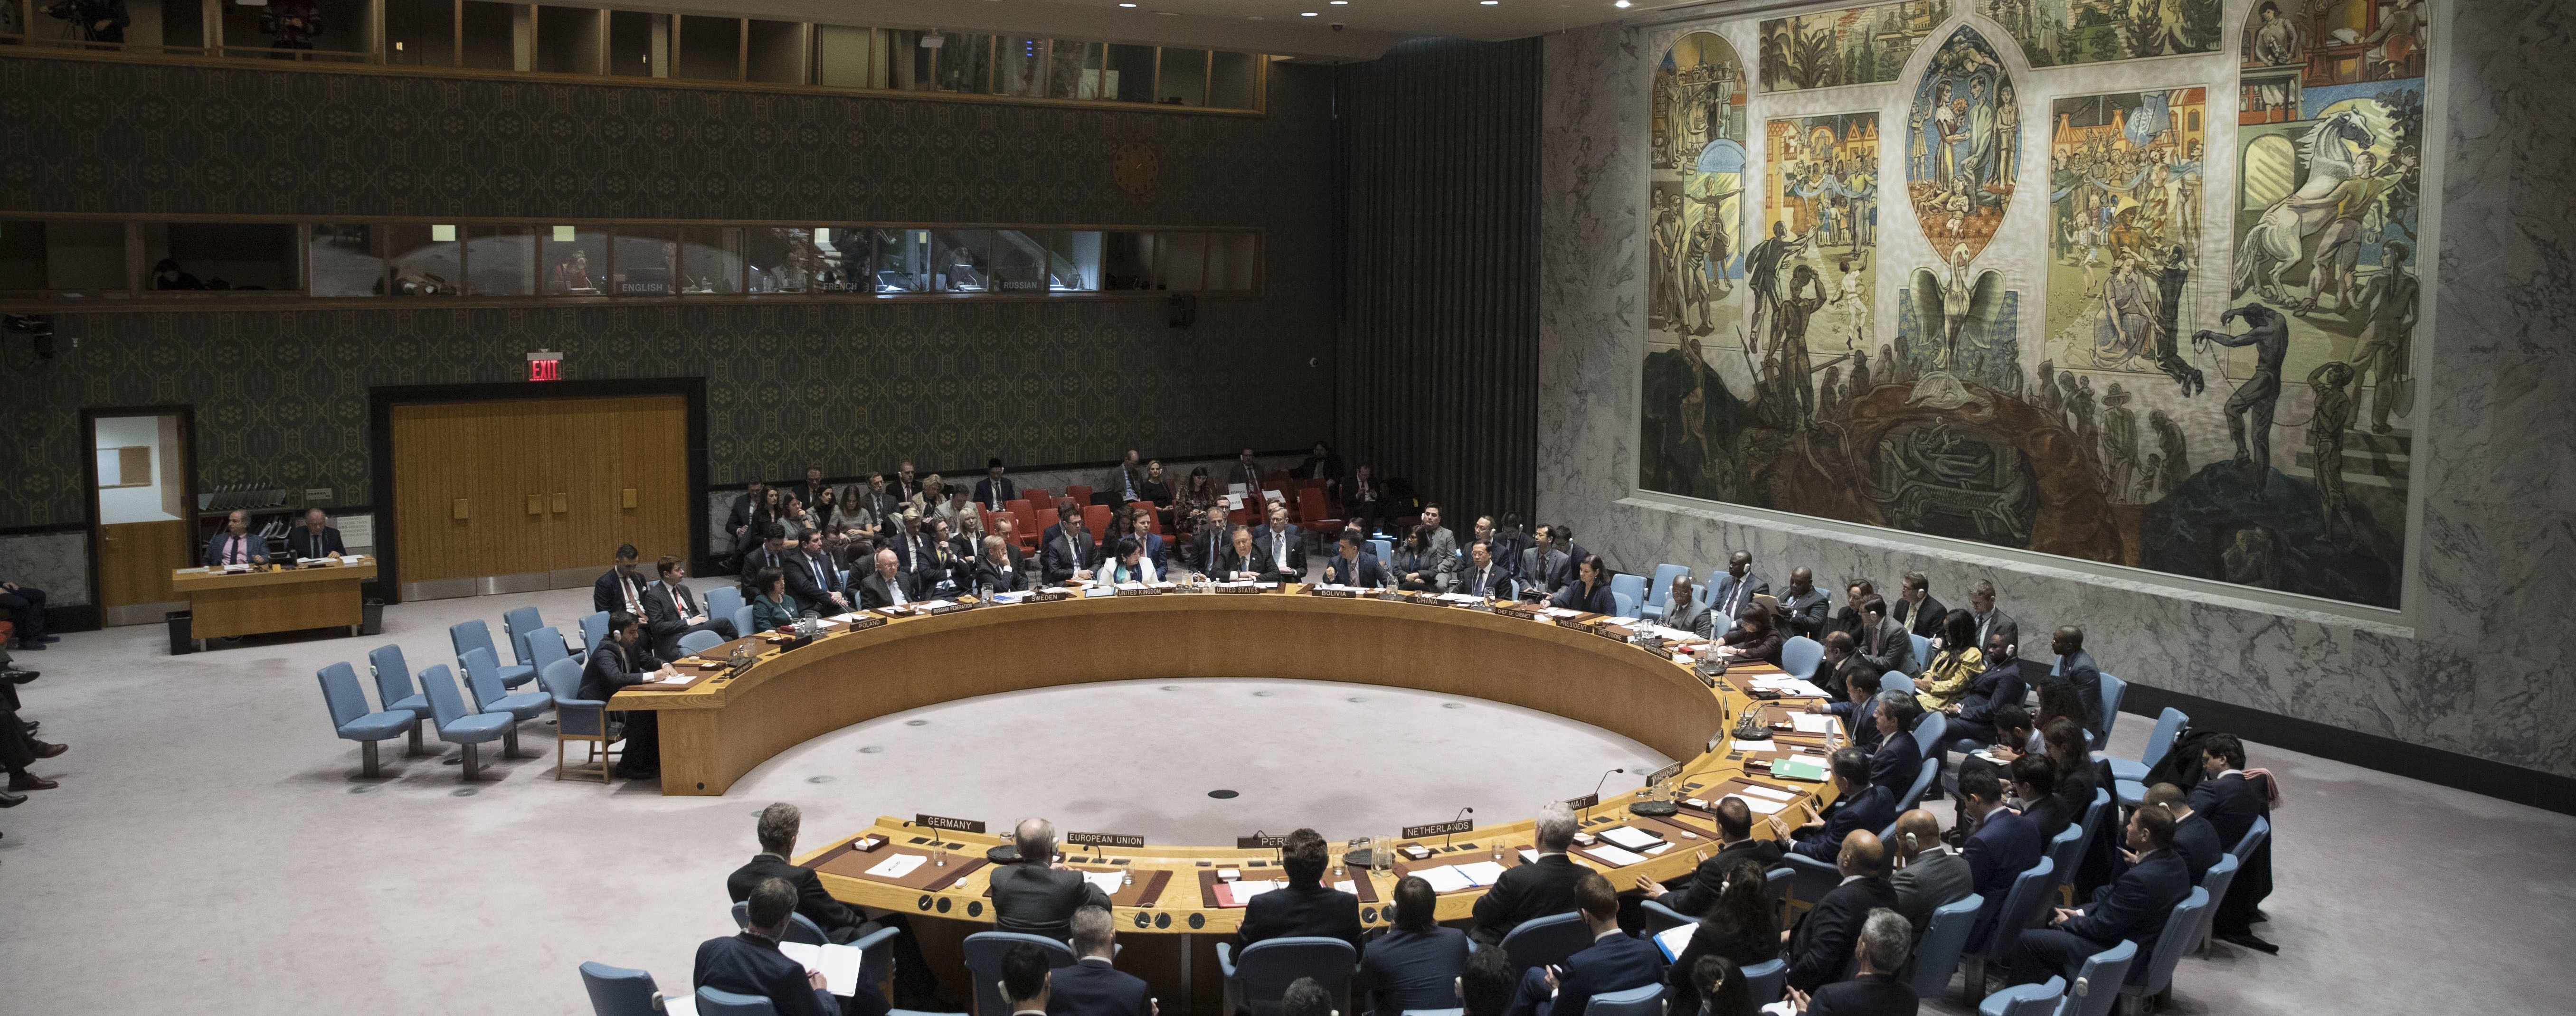 В ООН приняли Резолюцию глобальной солидарности в борьбе с коронавирусом